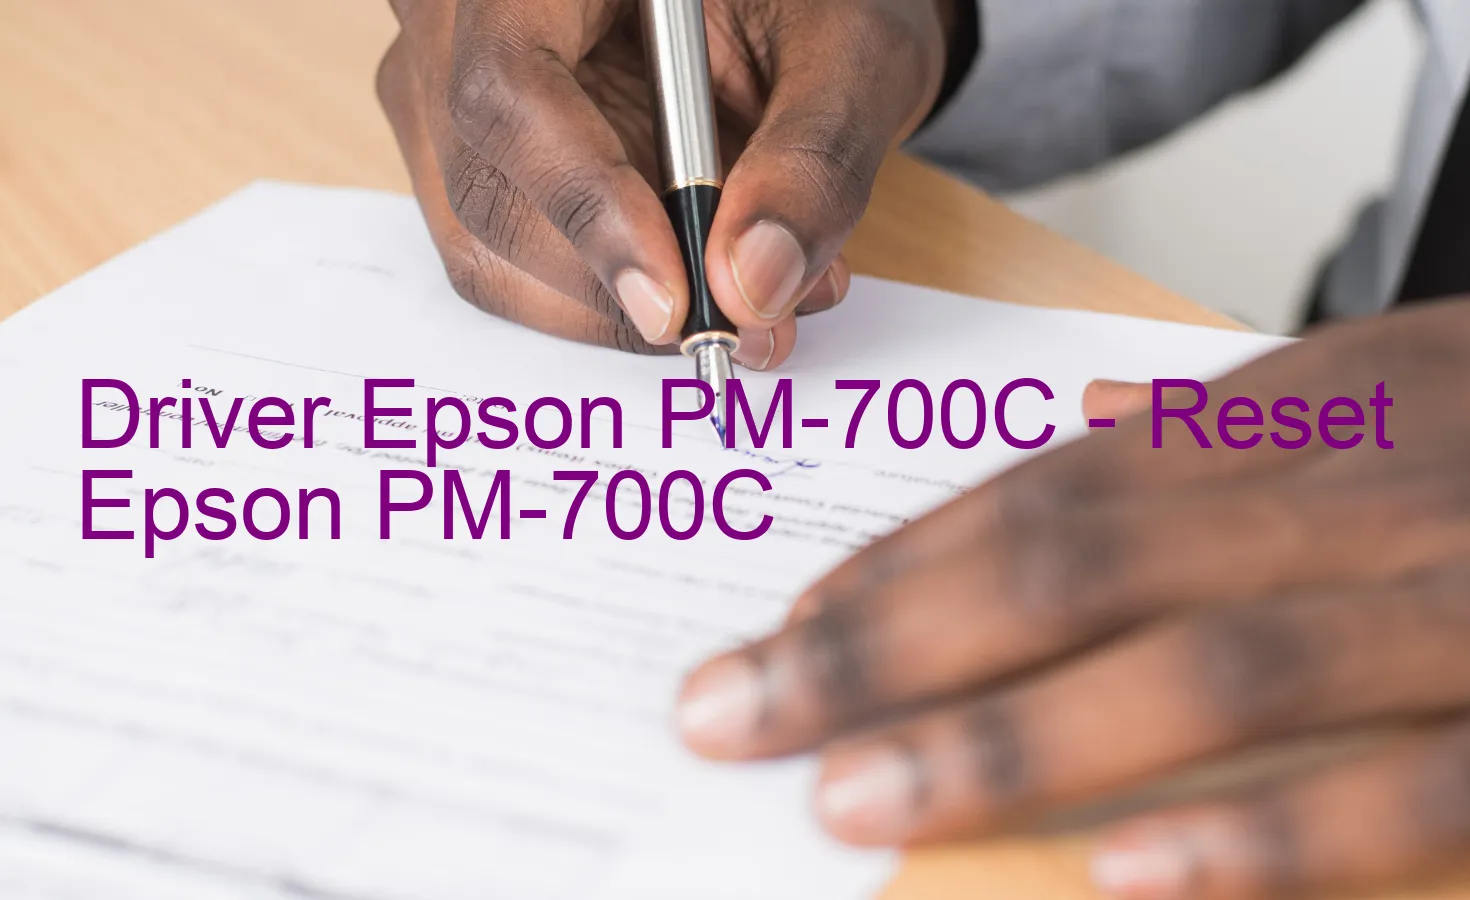 Epson PM-700Cのドライバー、Epson PM-700Cのリセットソフトウェア